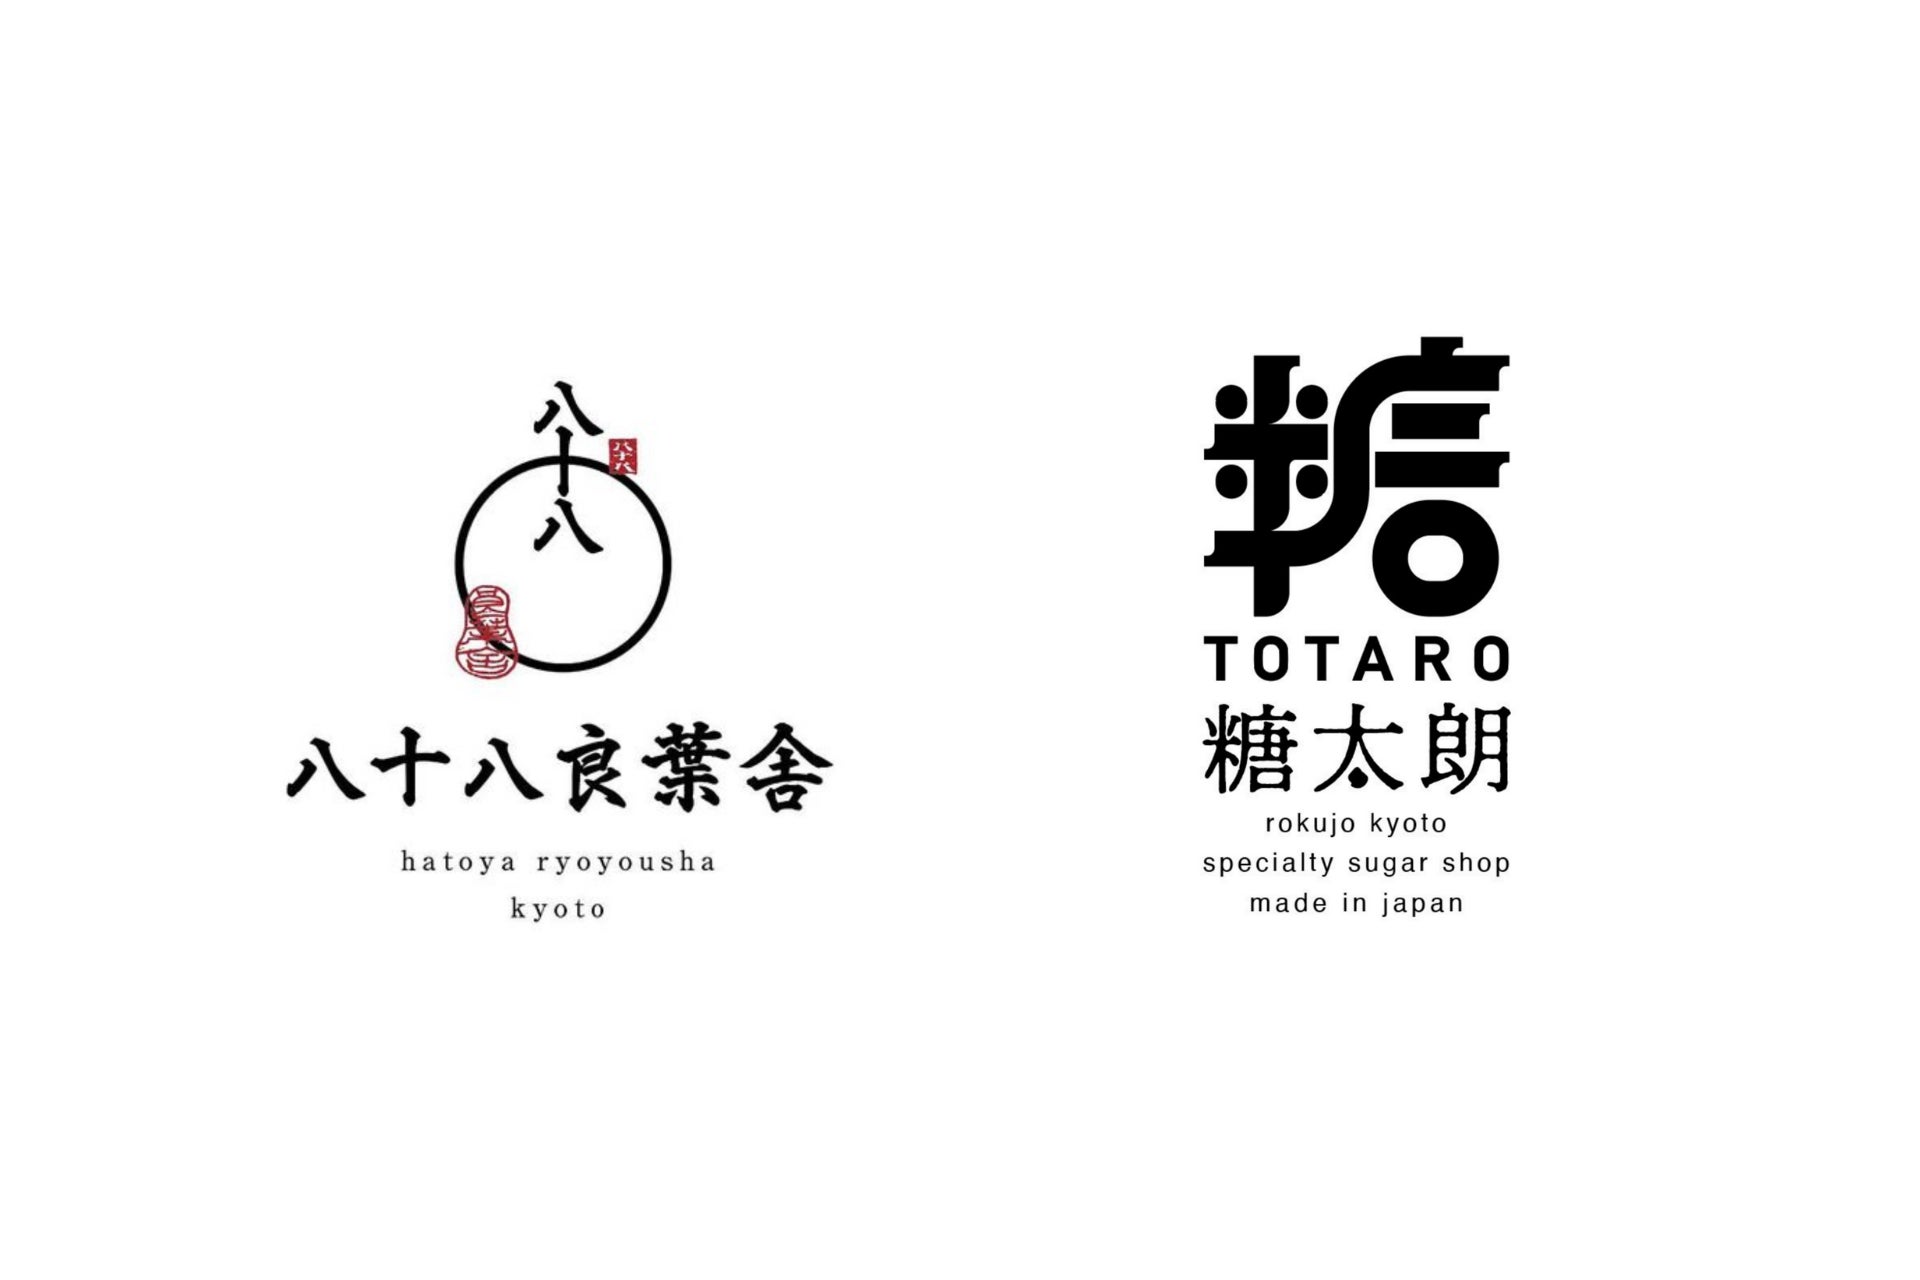 【日本茶スタンド×砂糖専門店】京都の「八十八良葉舎」と「糖太朗」が初のコラボレーション